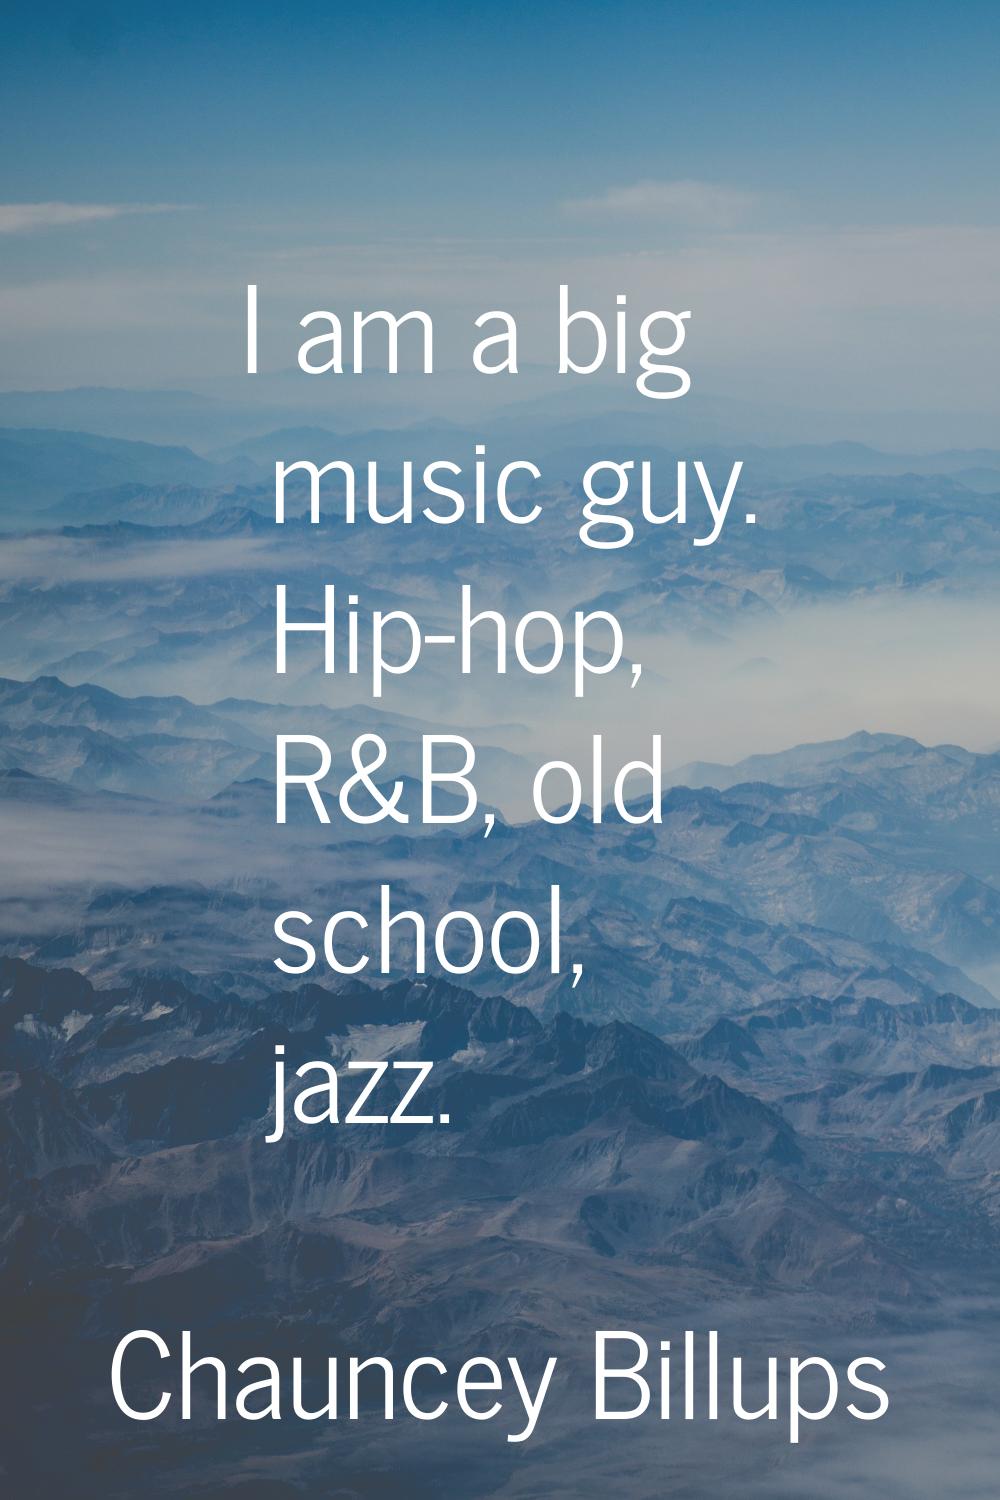 I am a big music guy. Hip-hop, R&B, old school, jazz.